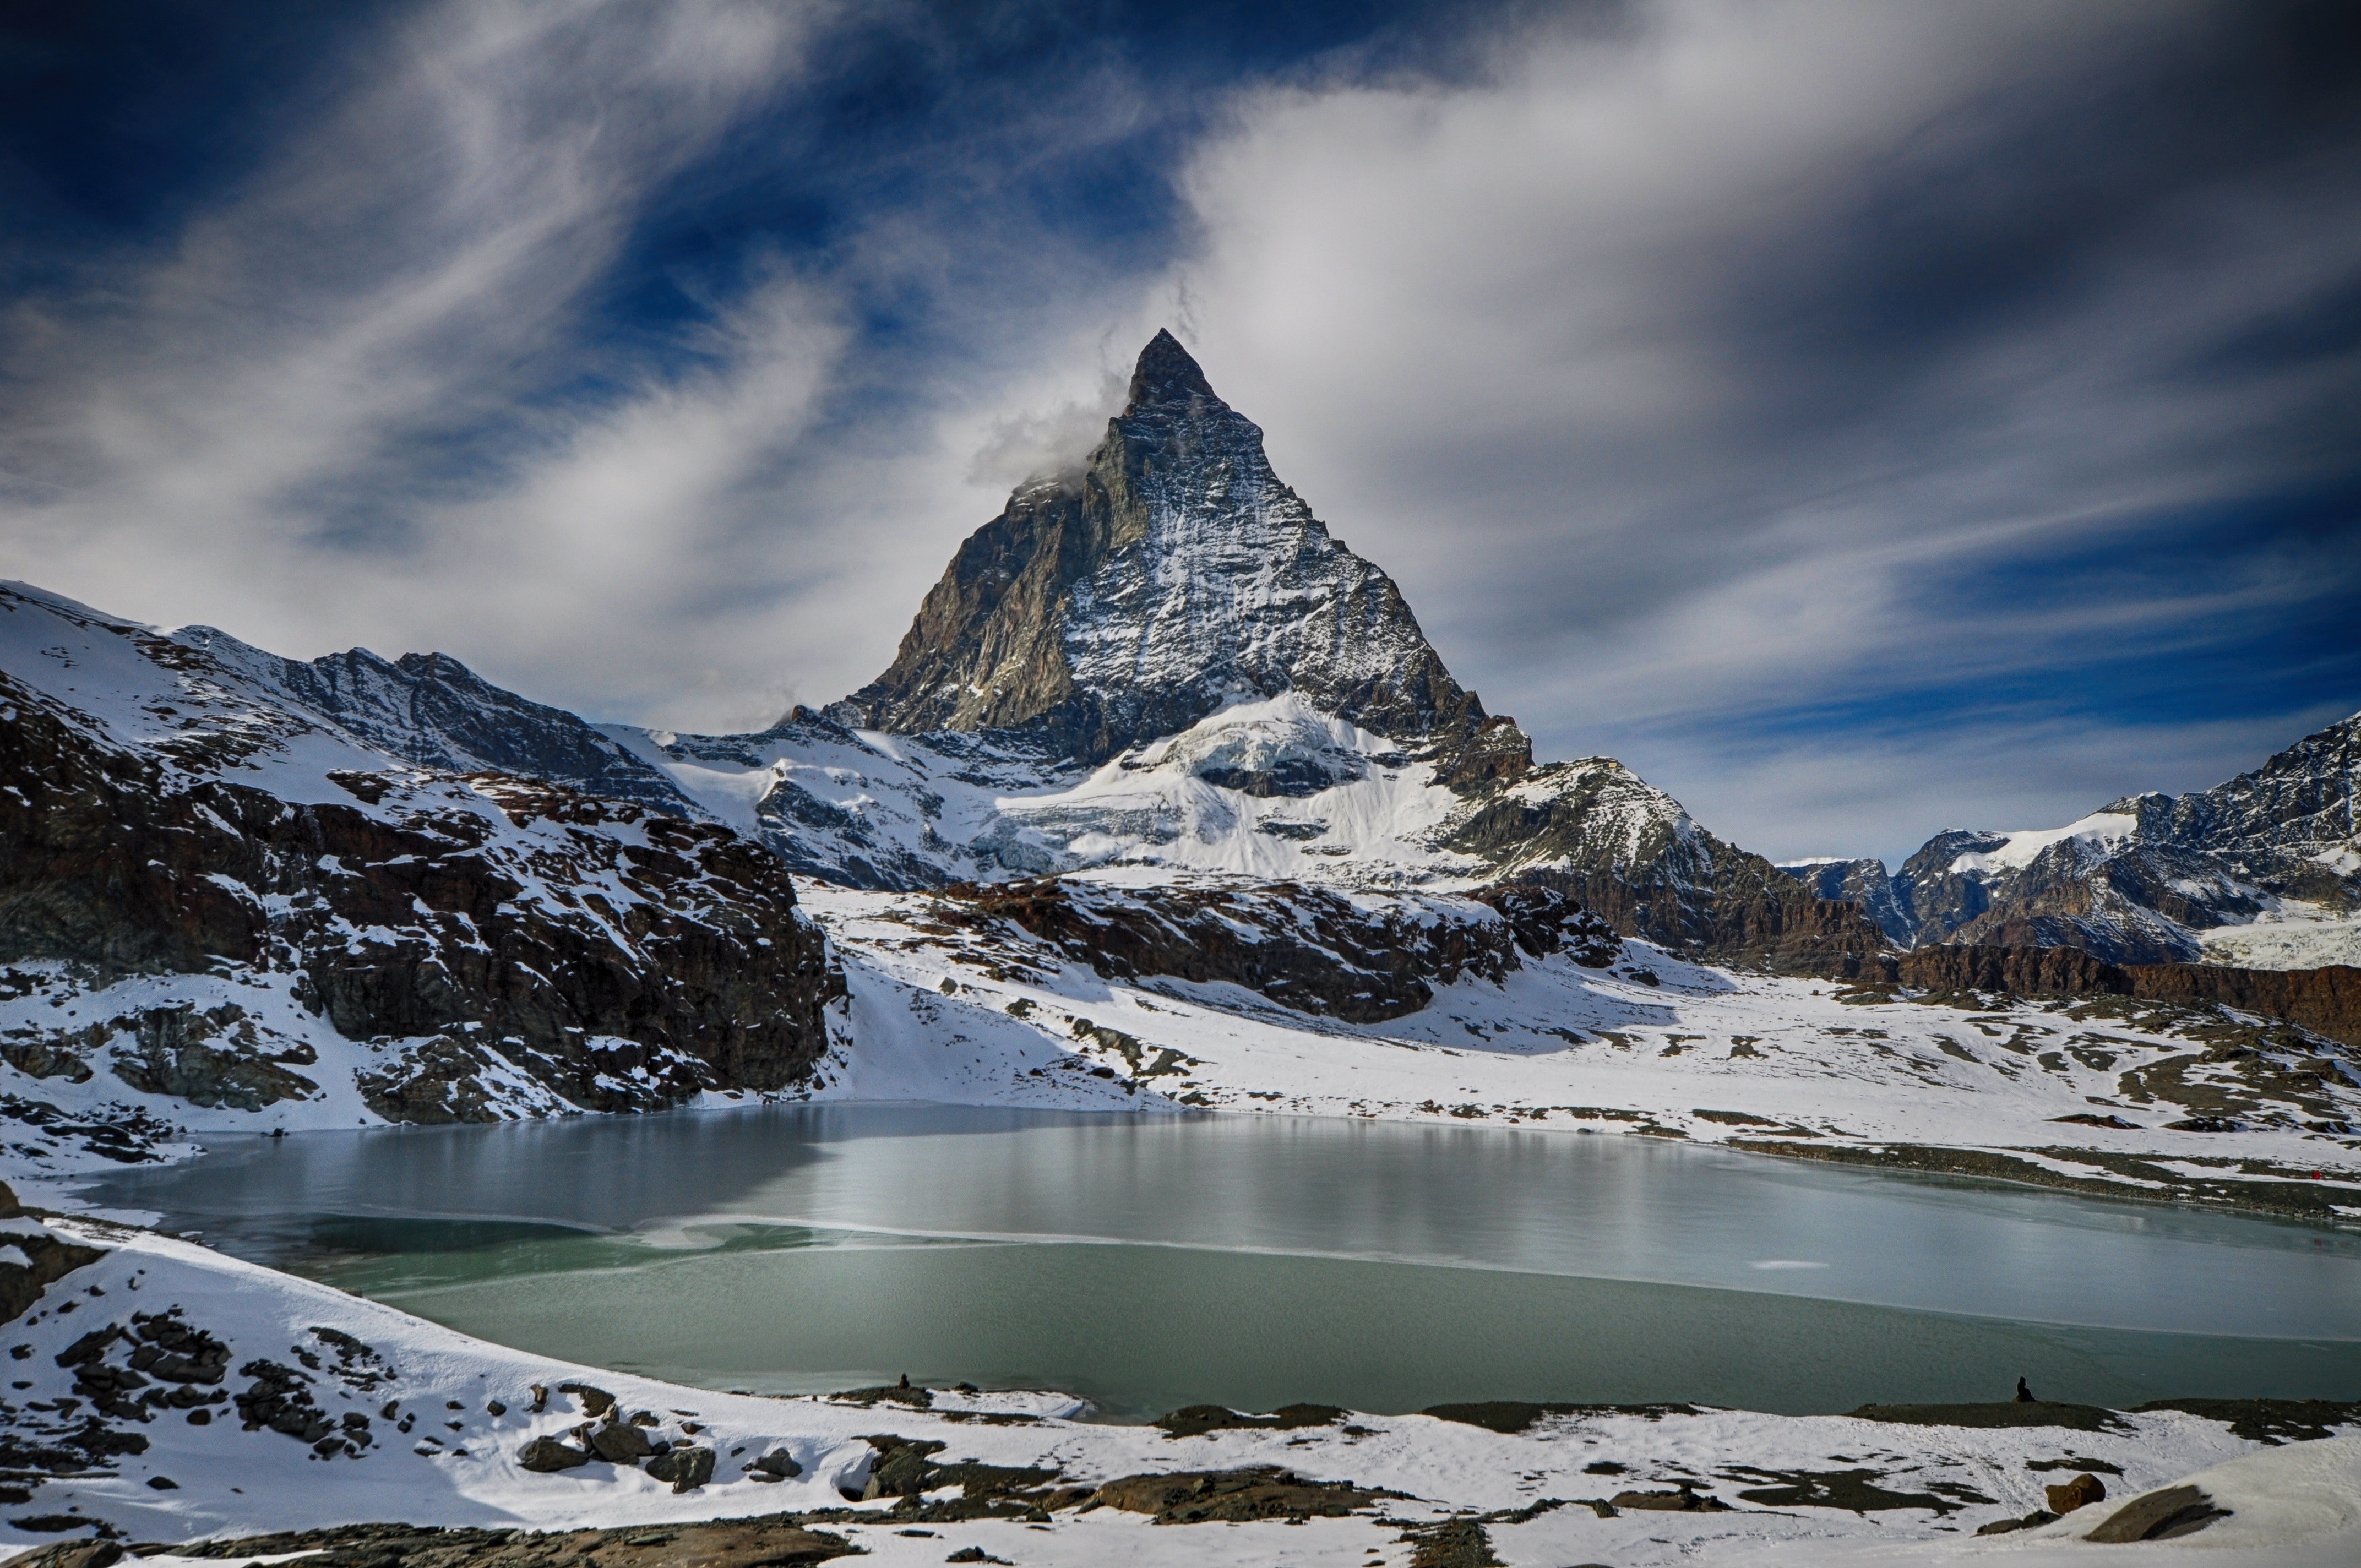 Matterhorn Hd Mountain Alps Wallpapers